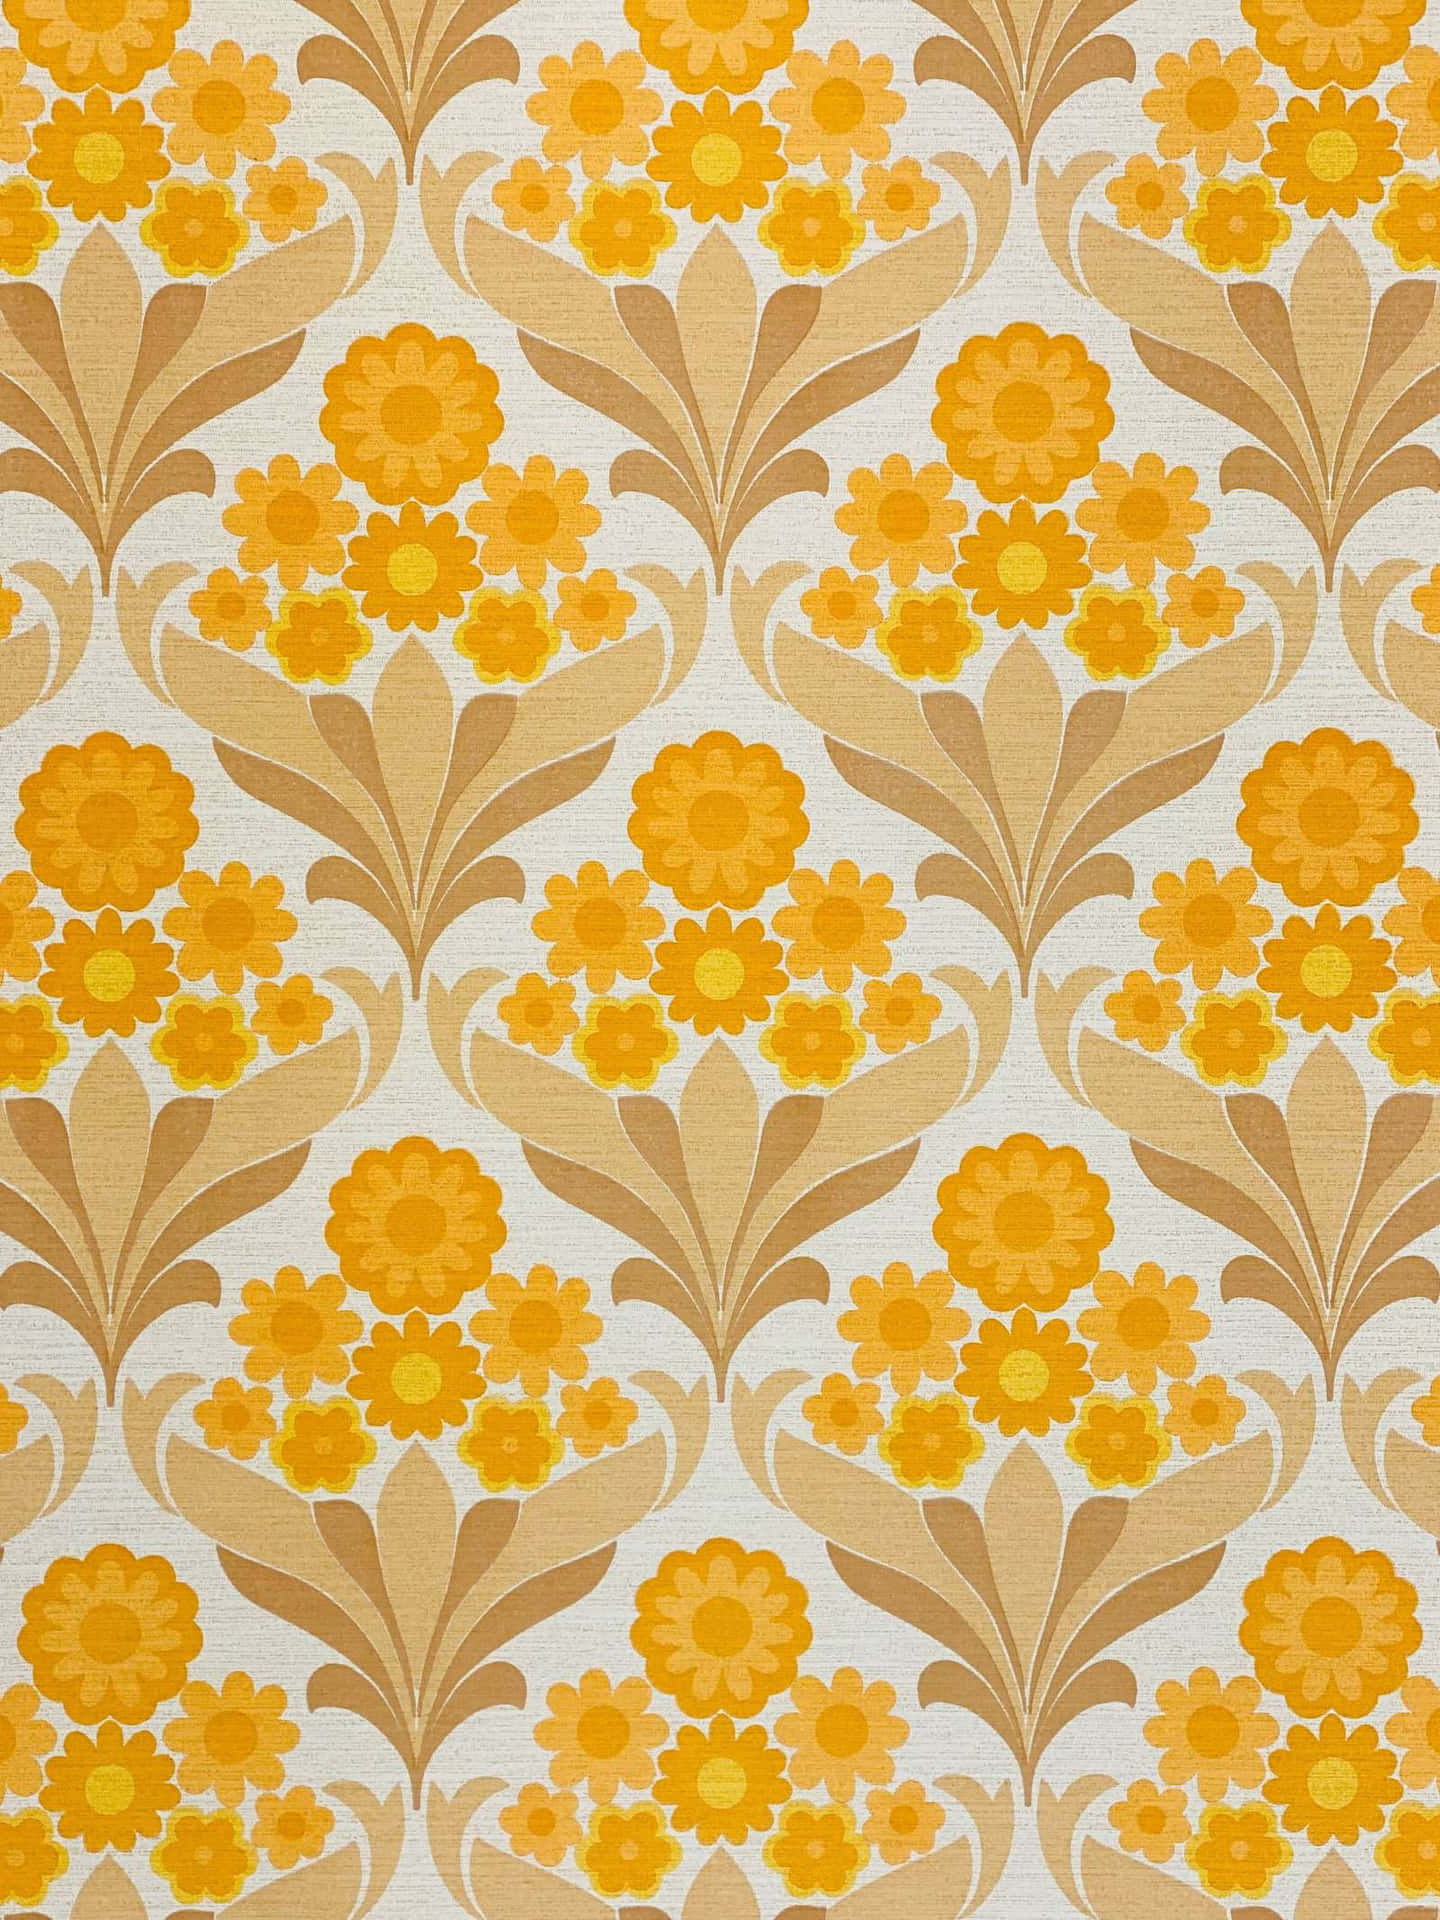 Hearts Forekomme i Denne fortryllende 70'er Floral Design Wallpaper